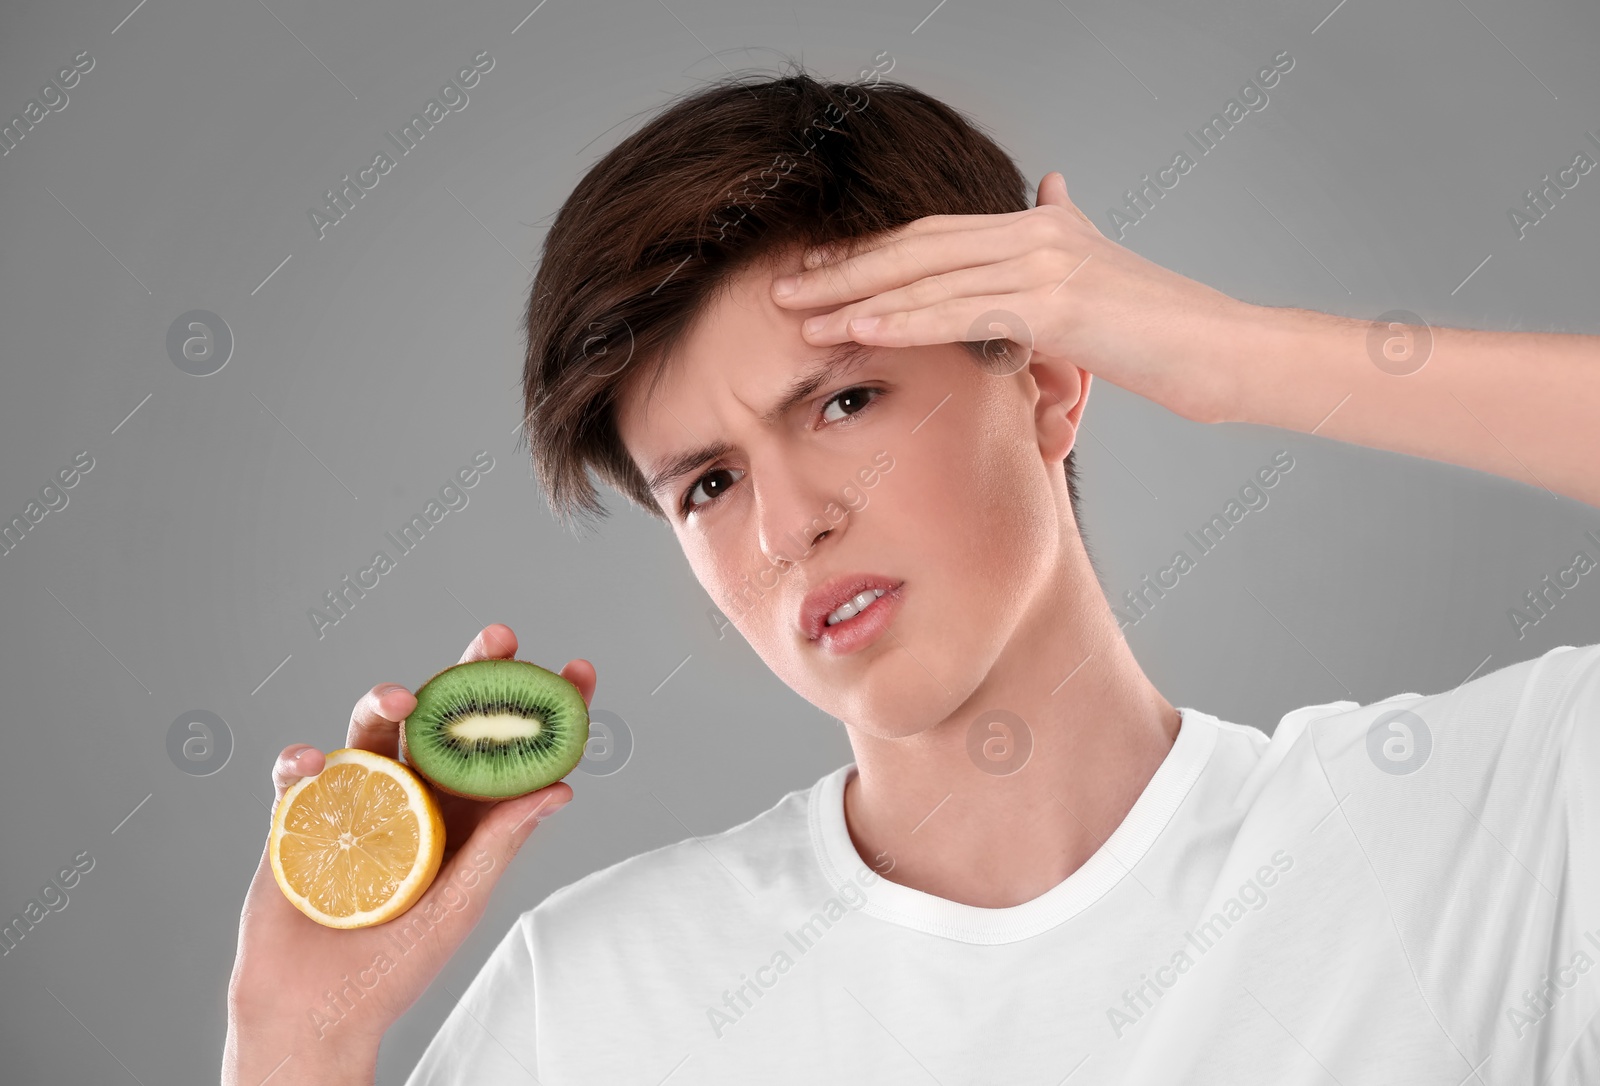 Photo of Teenage boy with acne problem holding lemon and kiwi on grey background. Skin allergy